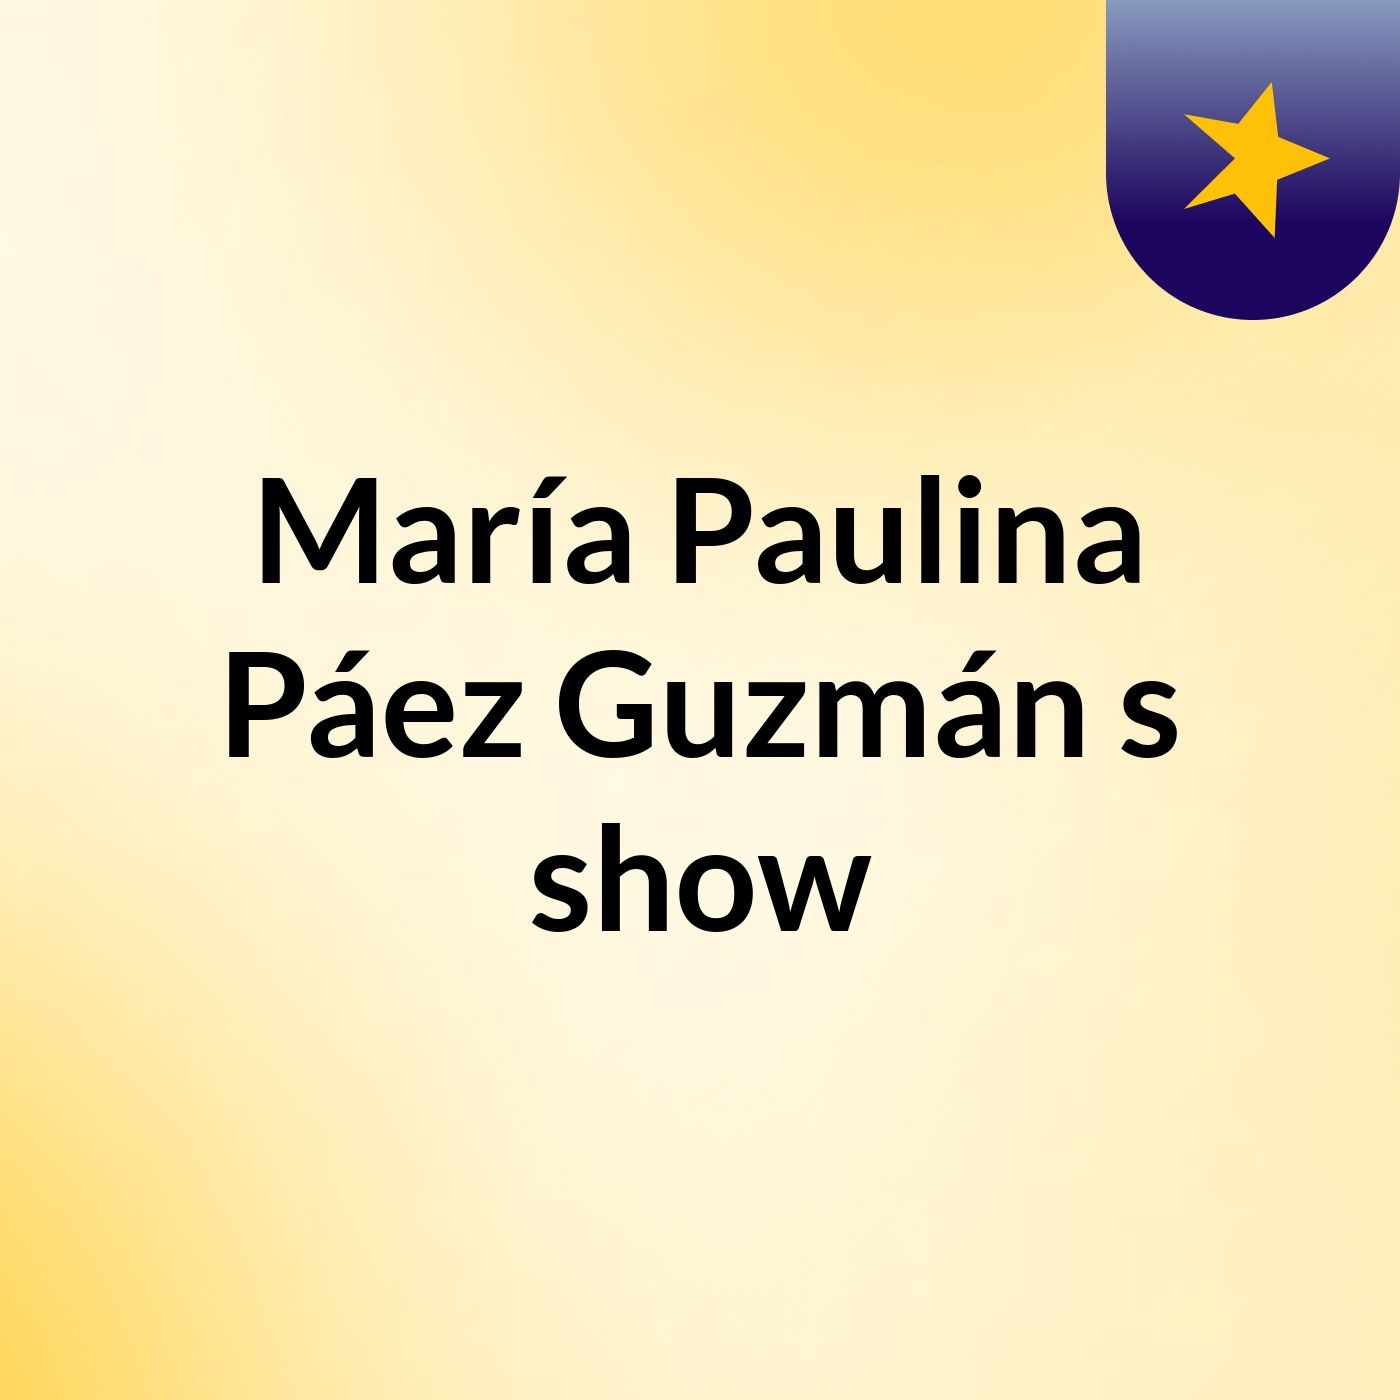 María Paulina Páez Guzmán's show